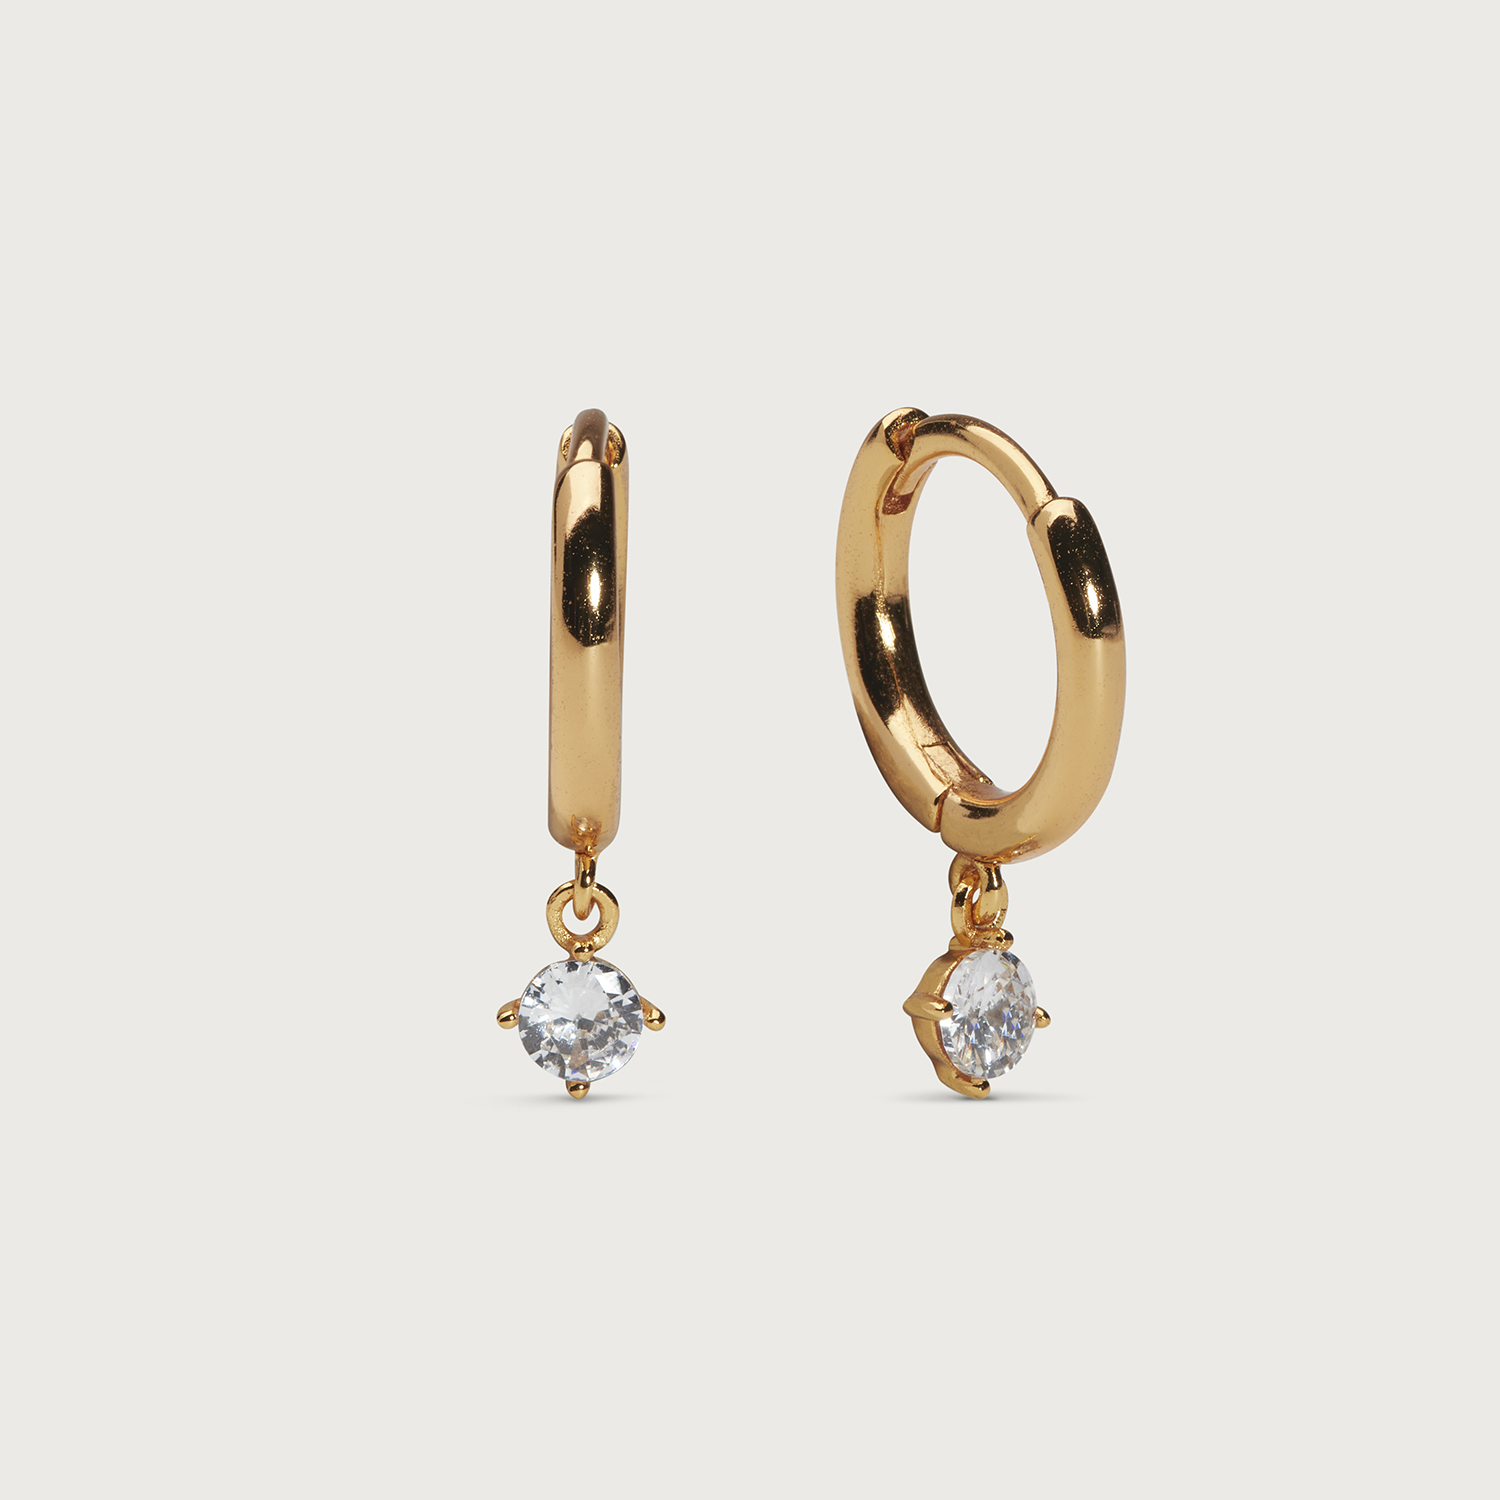 Petite Sparkling hoops earrings